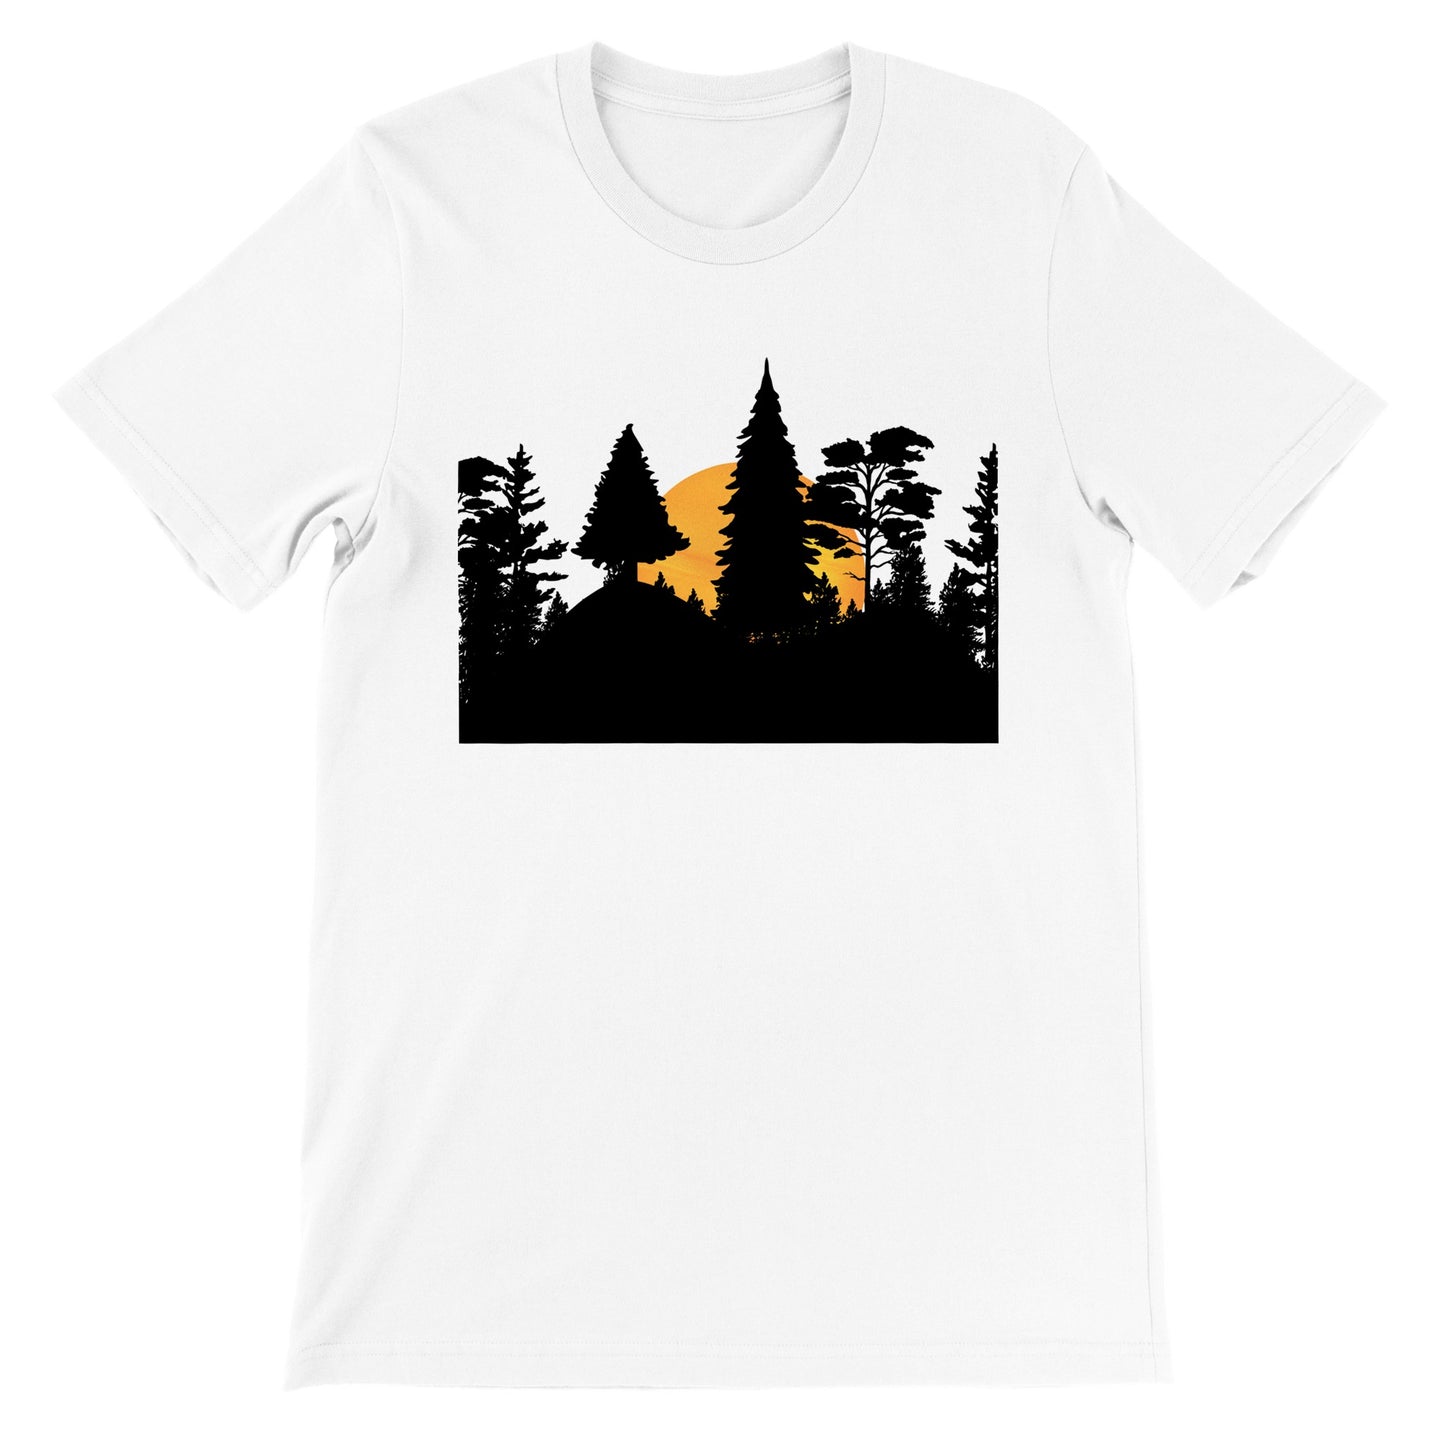 Camiseta blanca de hombre con original diseño de paisaje de pinos